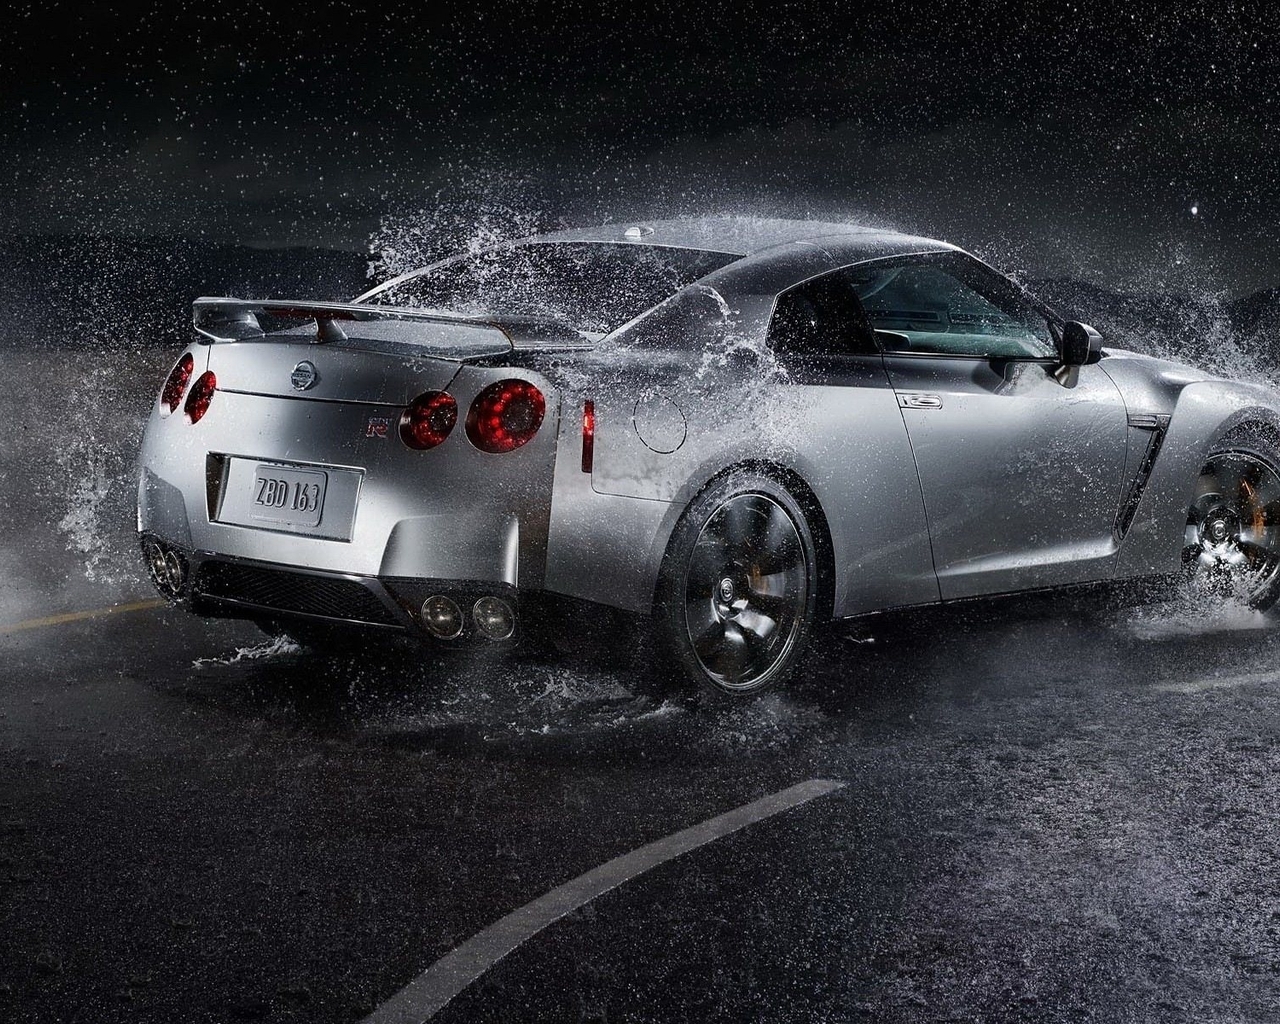 Картинка: Nissan GTR, брызги, дождь, дорога, скорость, поворот